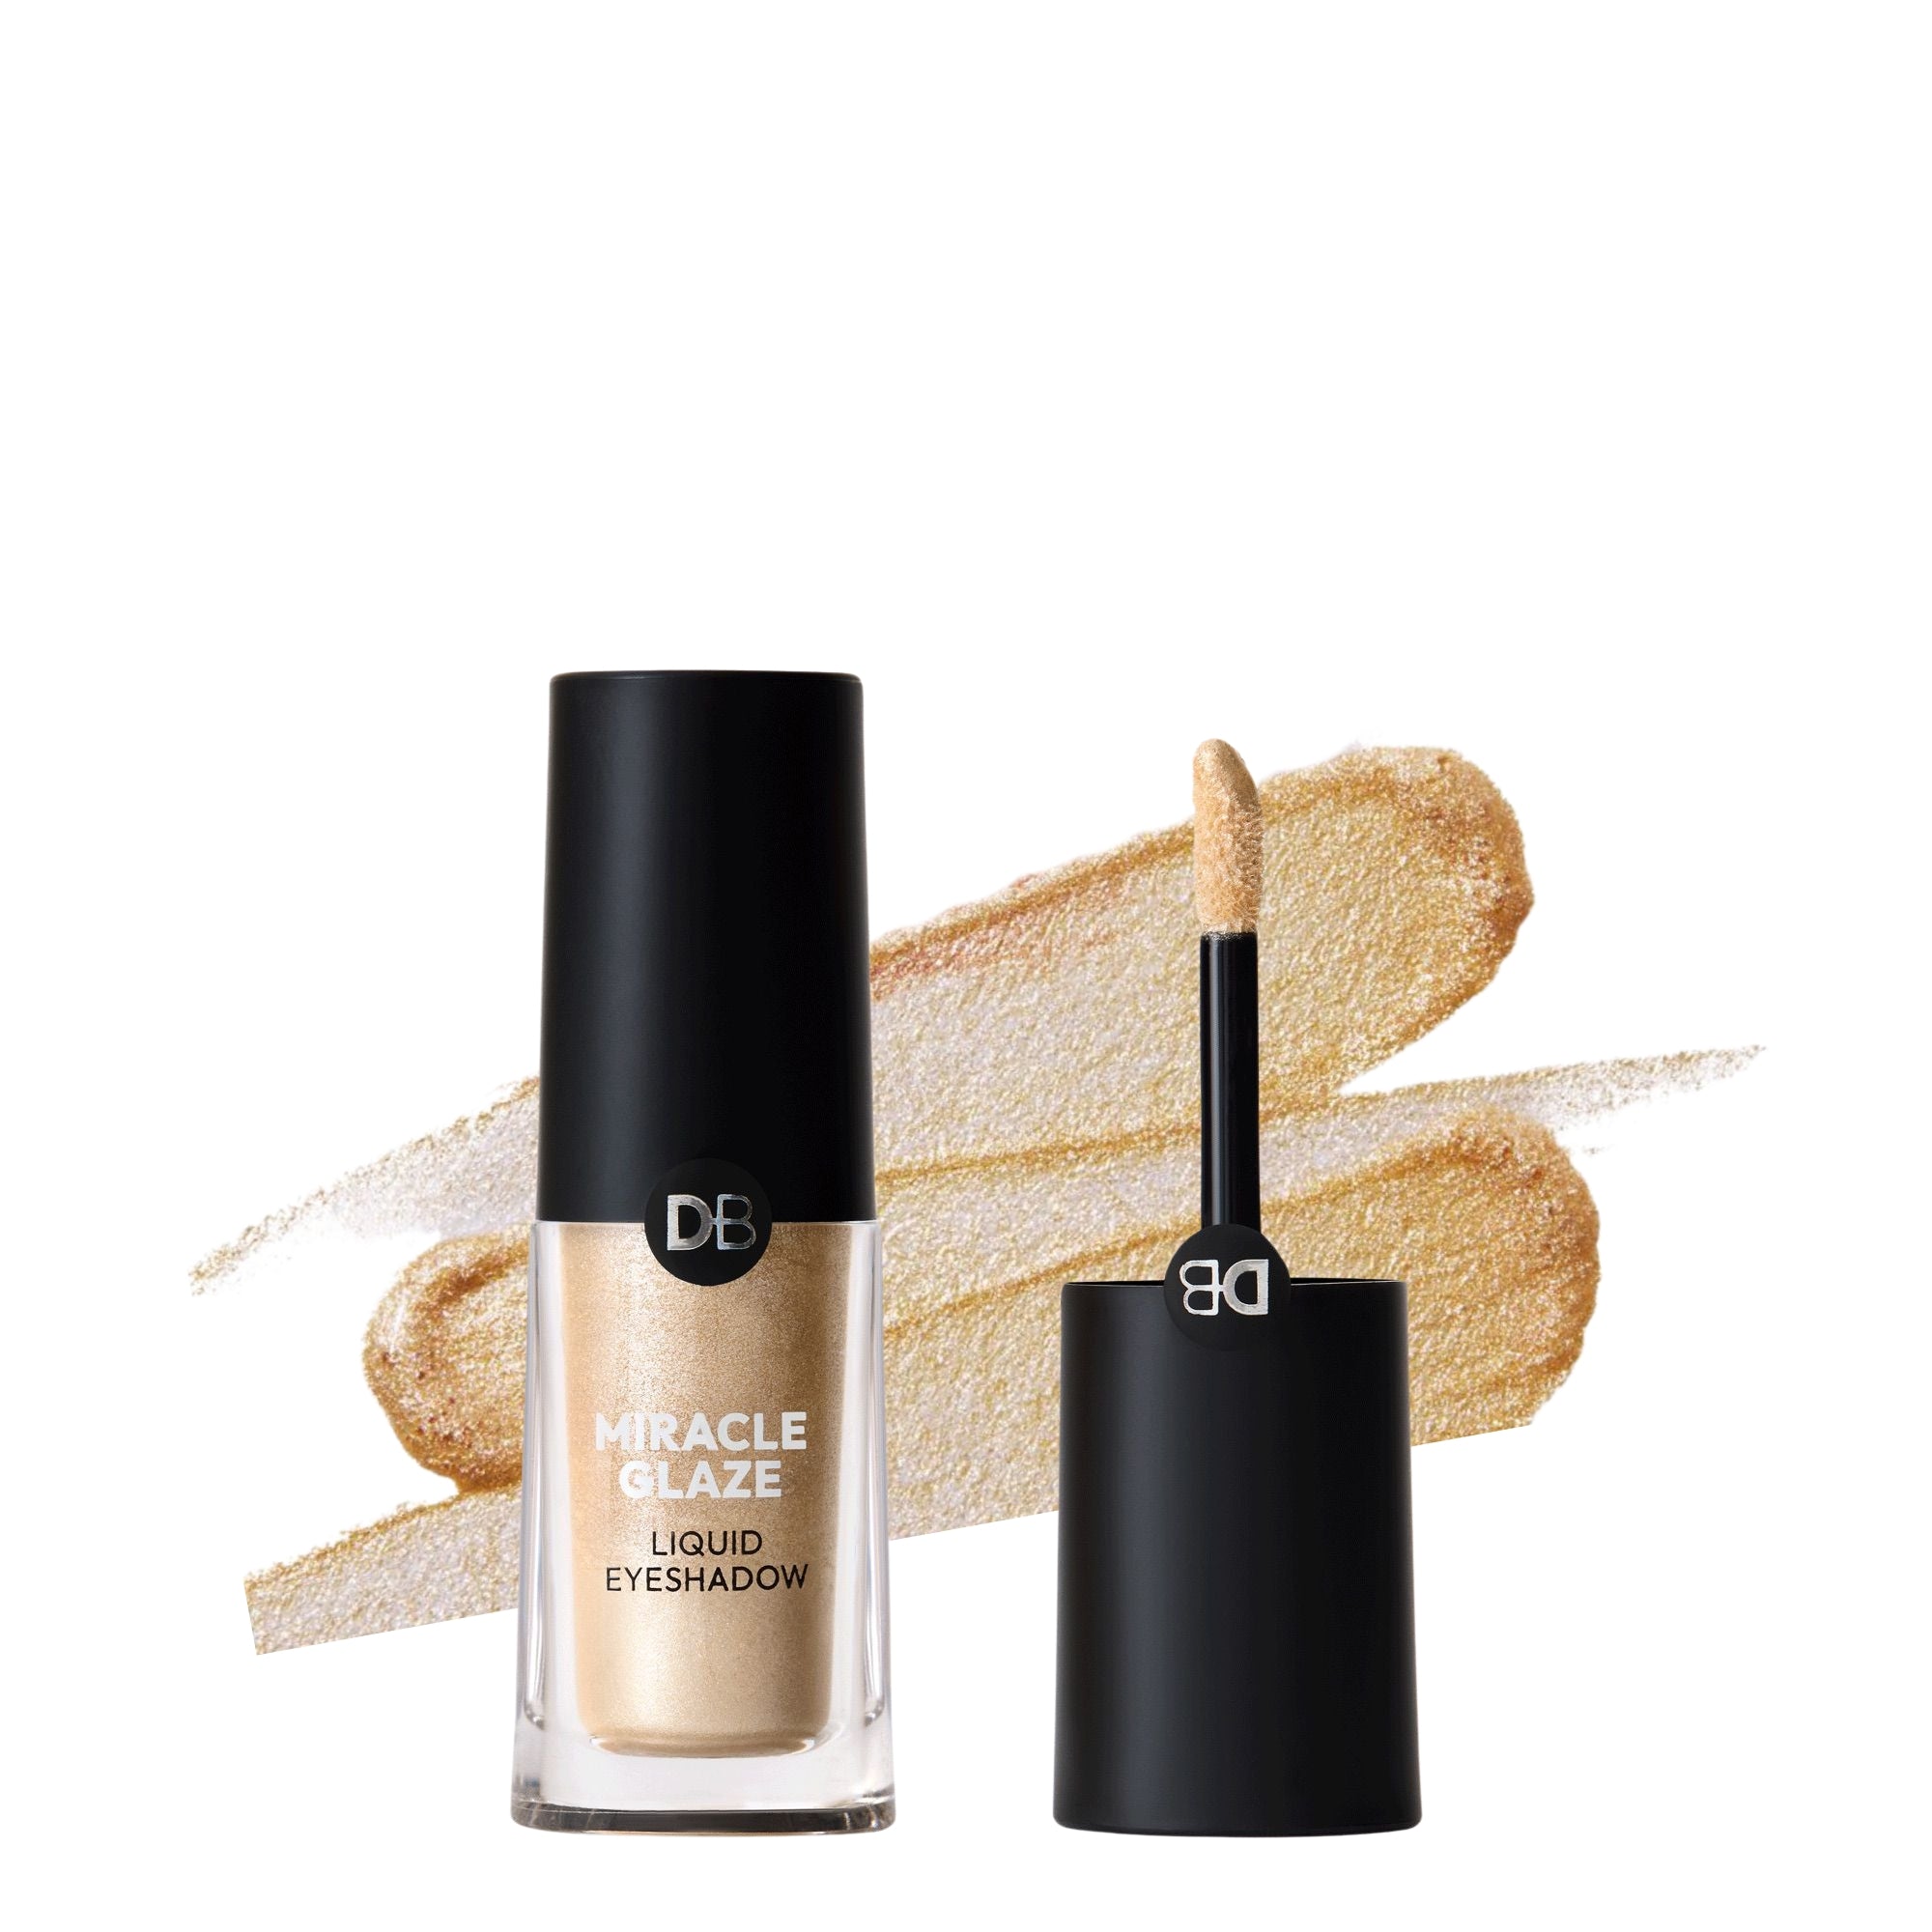 Miracle Glaze Liquid Eyeshadow (Golden Hour) | DB Cosmetics | Thumbnail